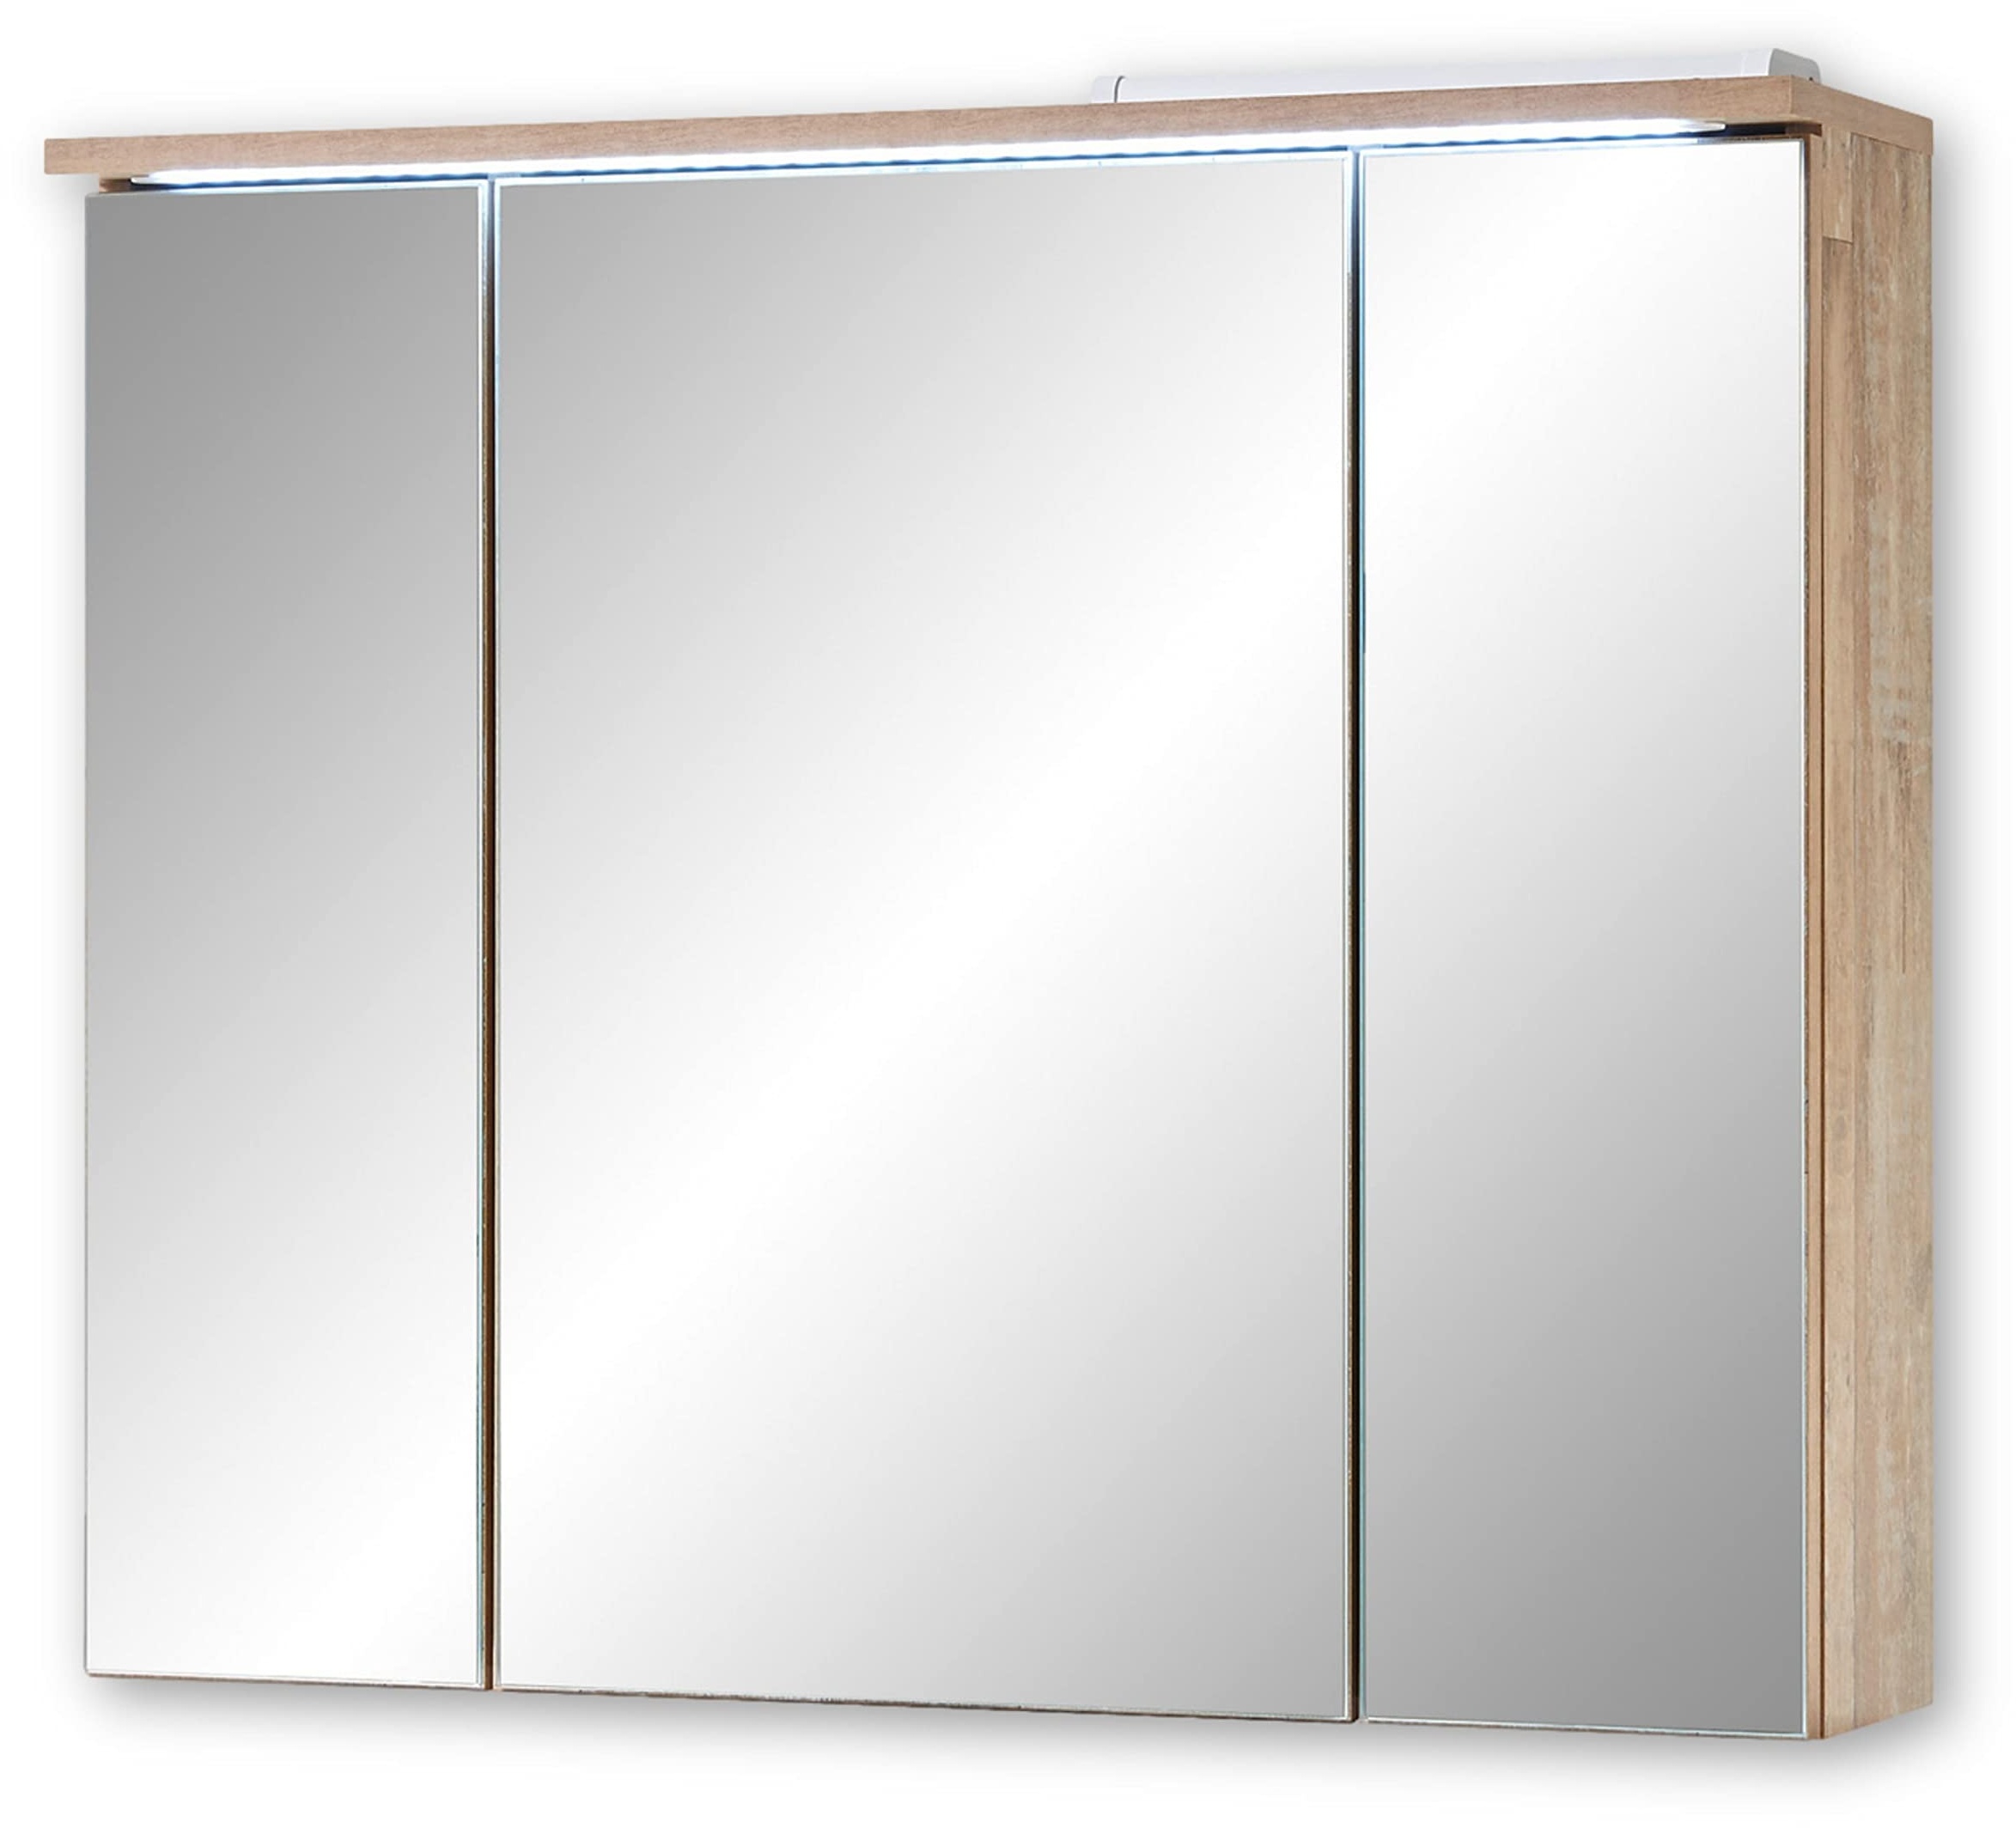 Stella Trading ROOF Spiegelschrank Bad mit LED-Beleuchtung in Eiche Old Style Optik - Badezimmerspiegel Schrank mit viel Stauraum - 80 x 68 x 21 cm (B/H/T)